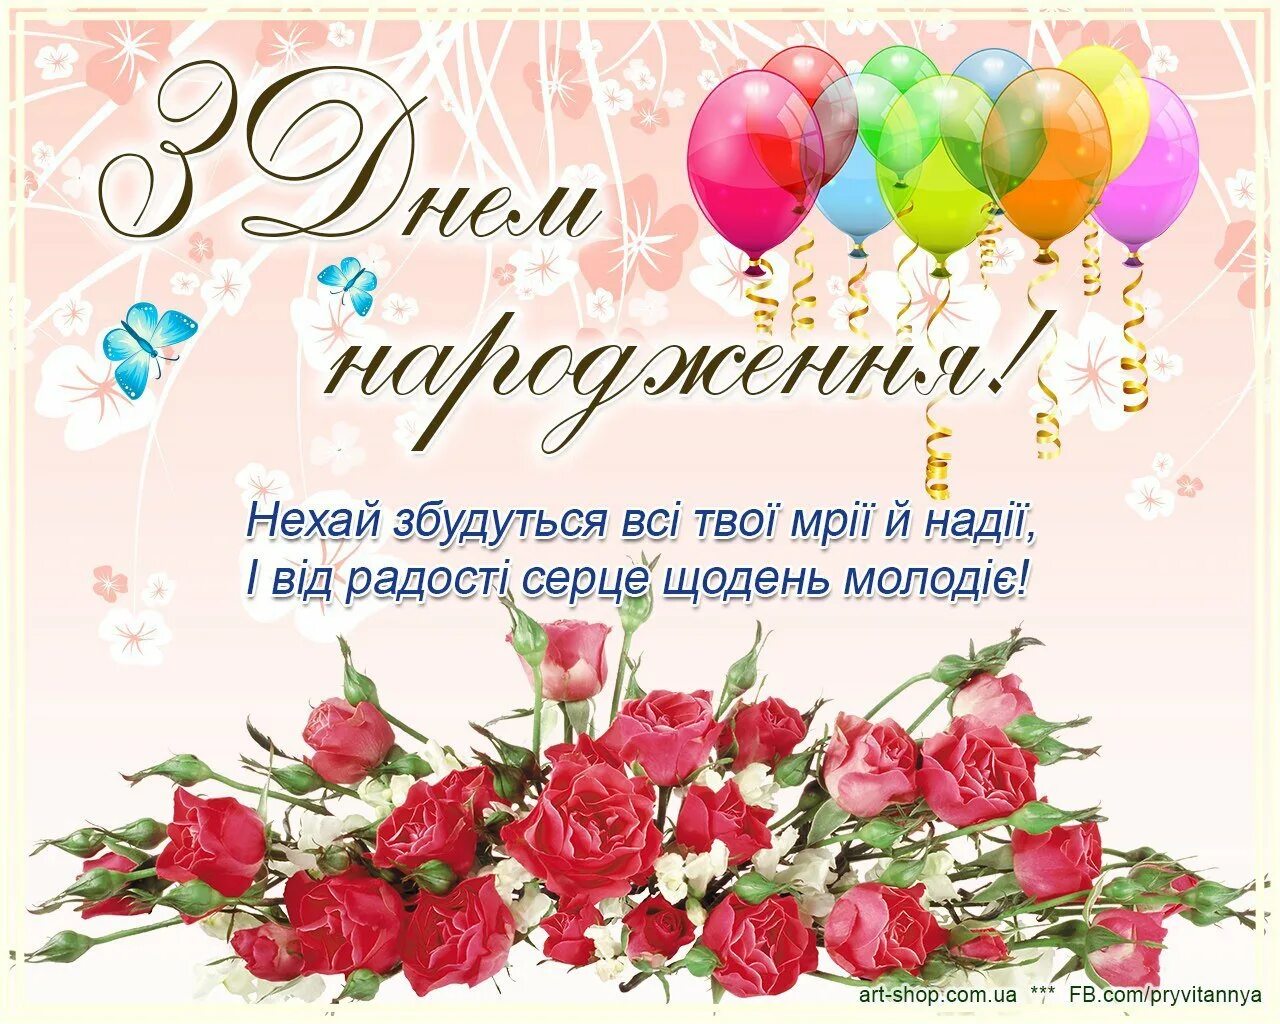 Поздравления с днём рождения на украинском языке. Поздравления с днём рождения на украинском языке открытки. Поздравления с днём рождения женщине на украинском языке. Поздравленя с днём рождения на украинском языке. Поздравление на украинском с днем рождения мужчине